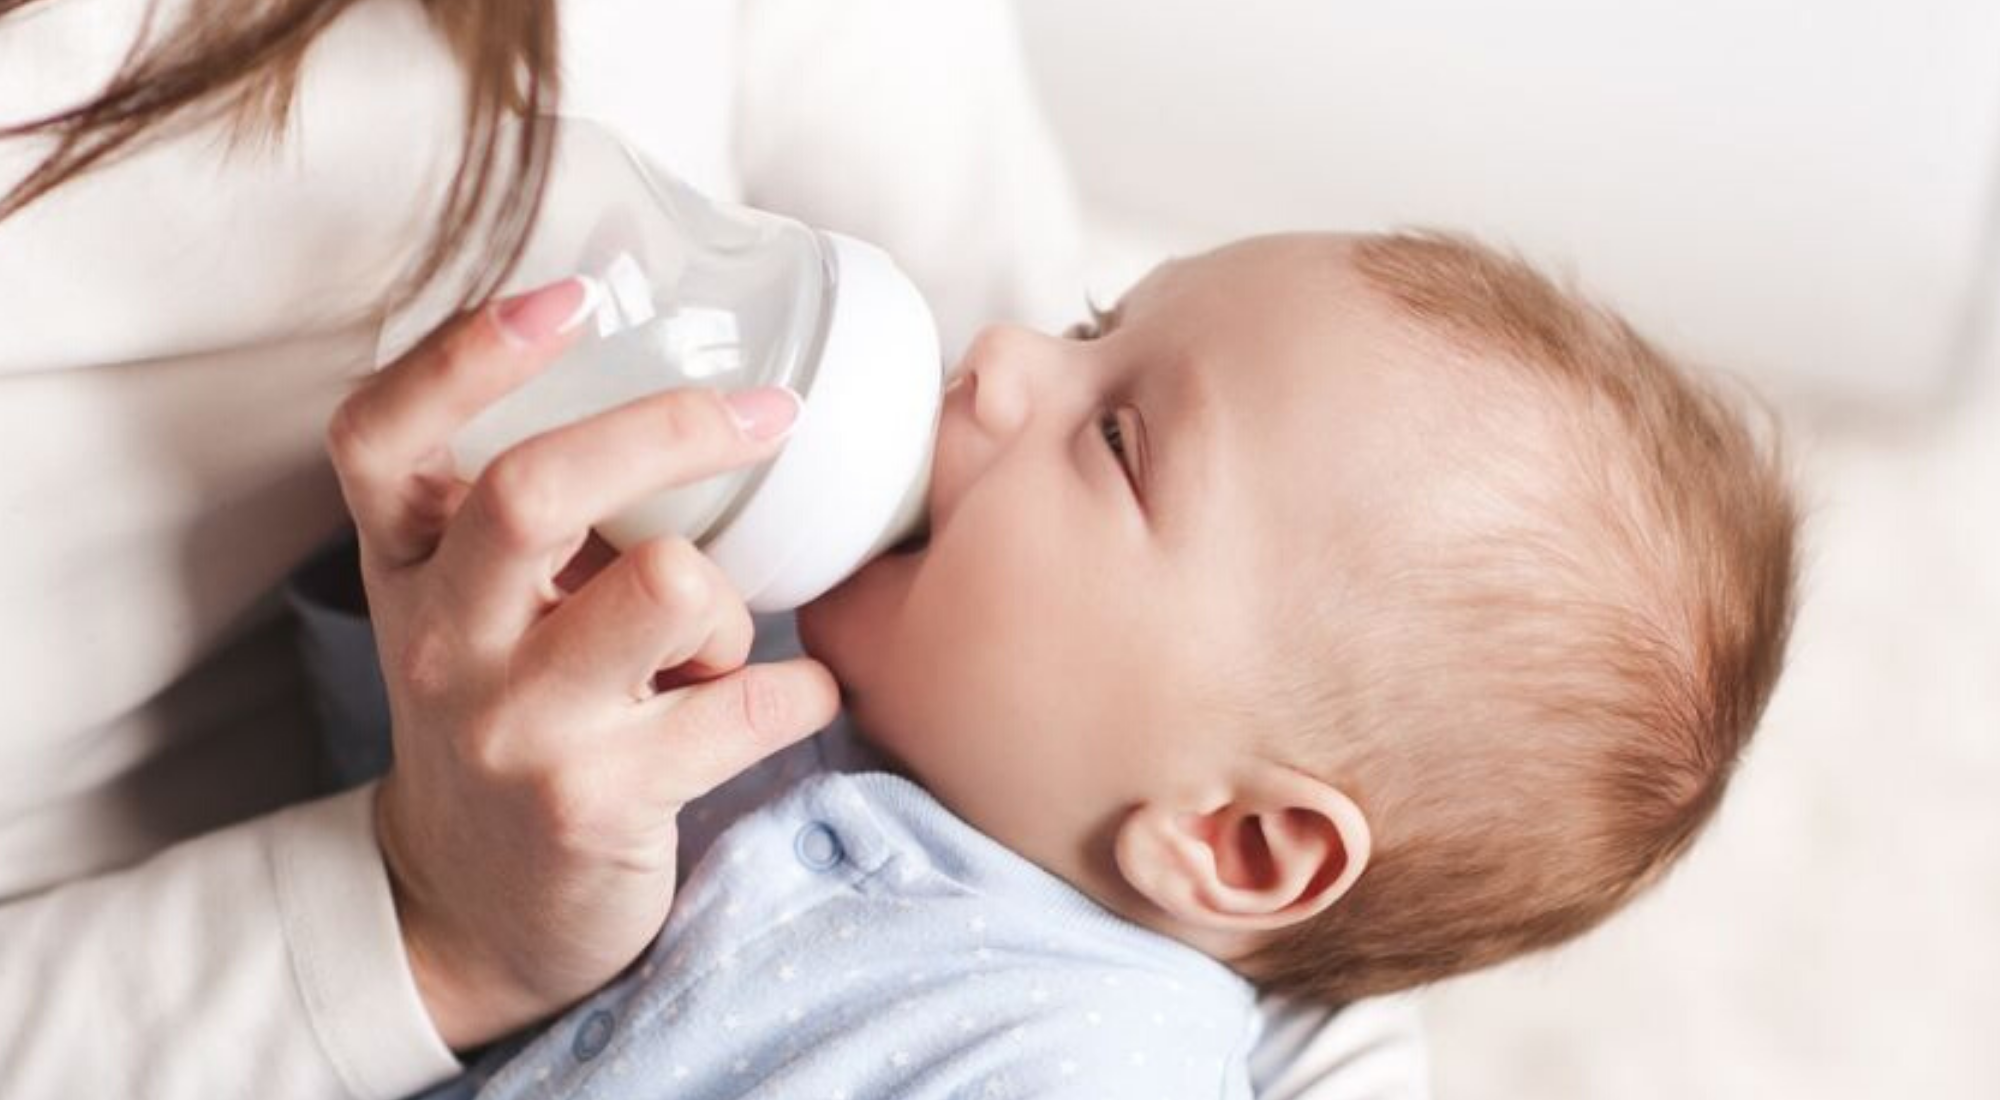 infant bottle feeding amount